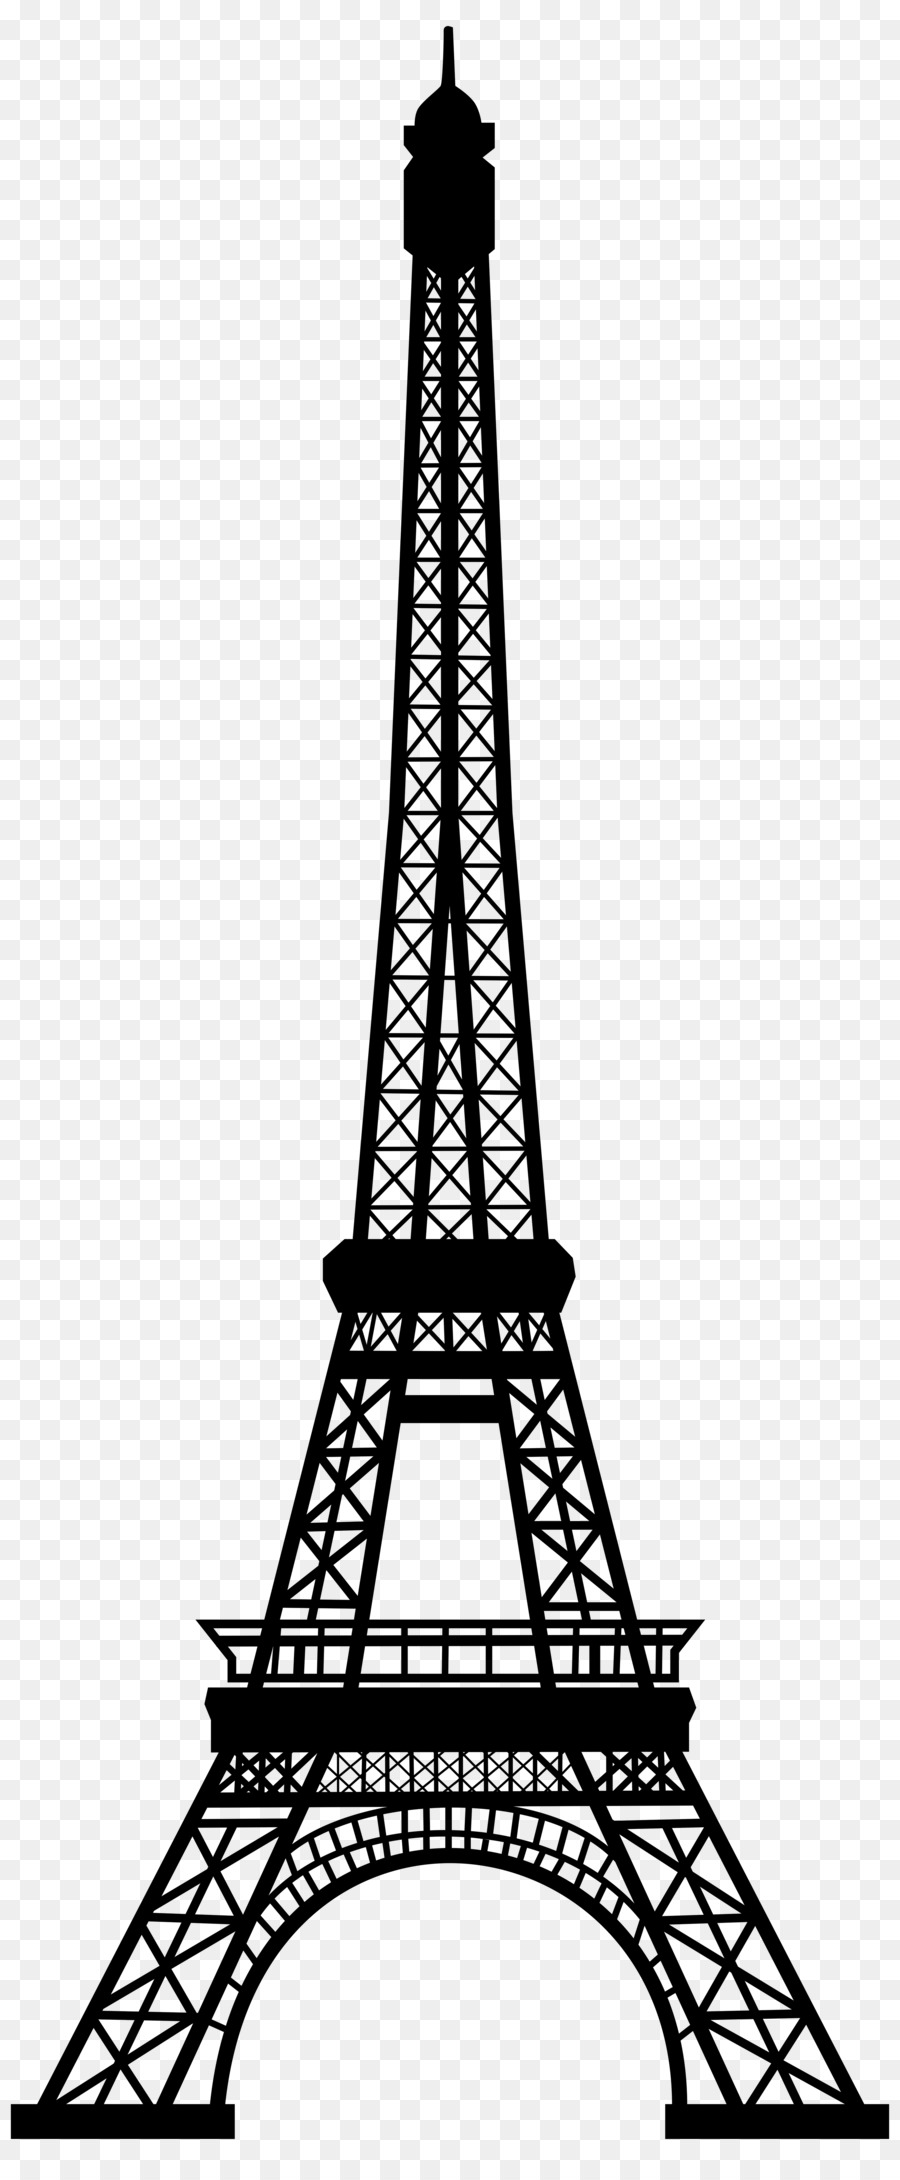 Eiffel Tower Silhouette Clip art - Paris png download - 3325*8000 - Free Transparent Eiffel Tower png Download.